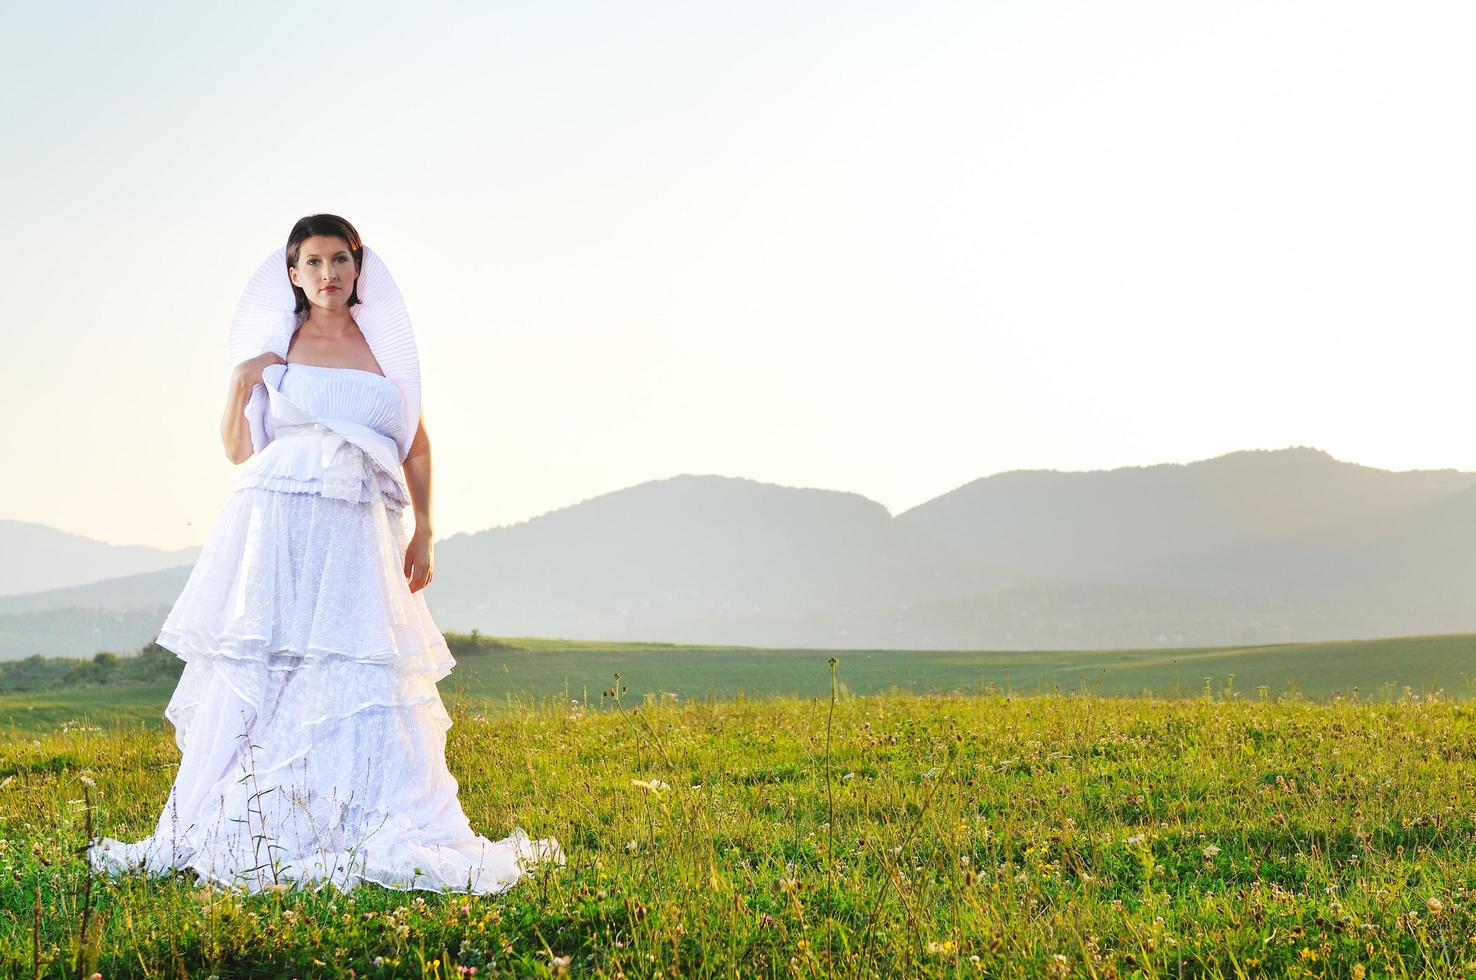 Outdoor bridal portrait photo